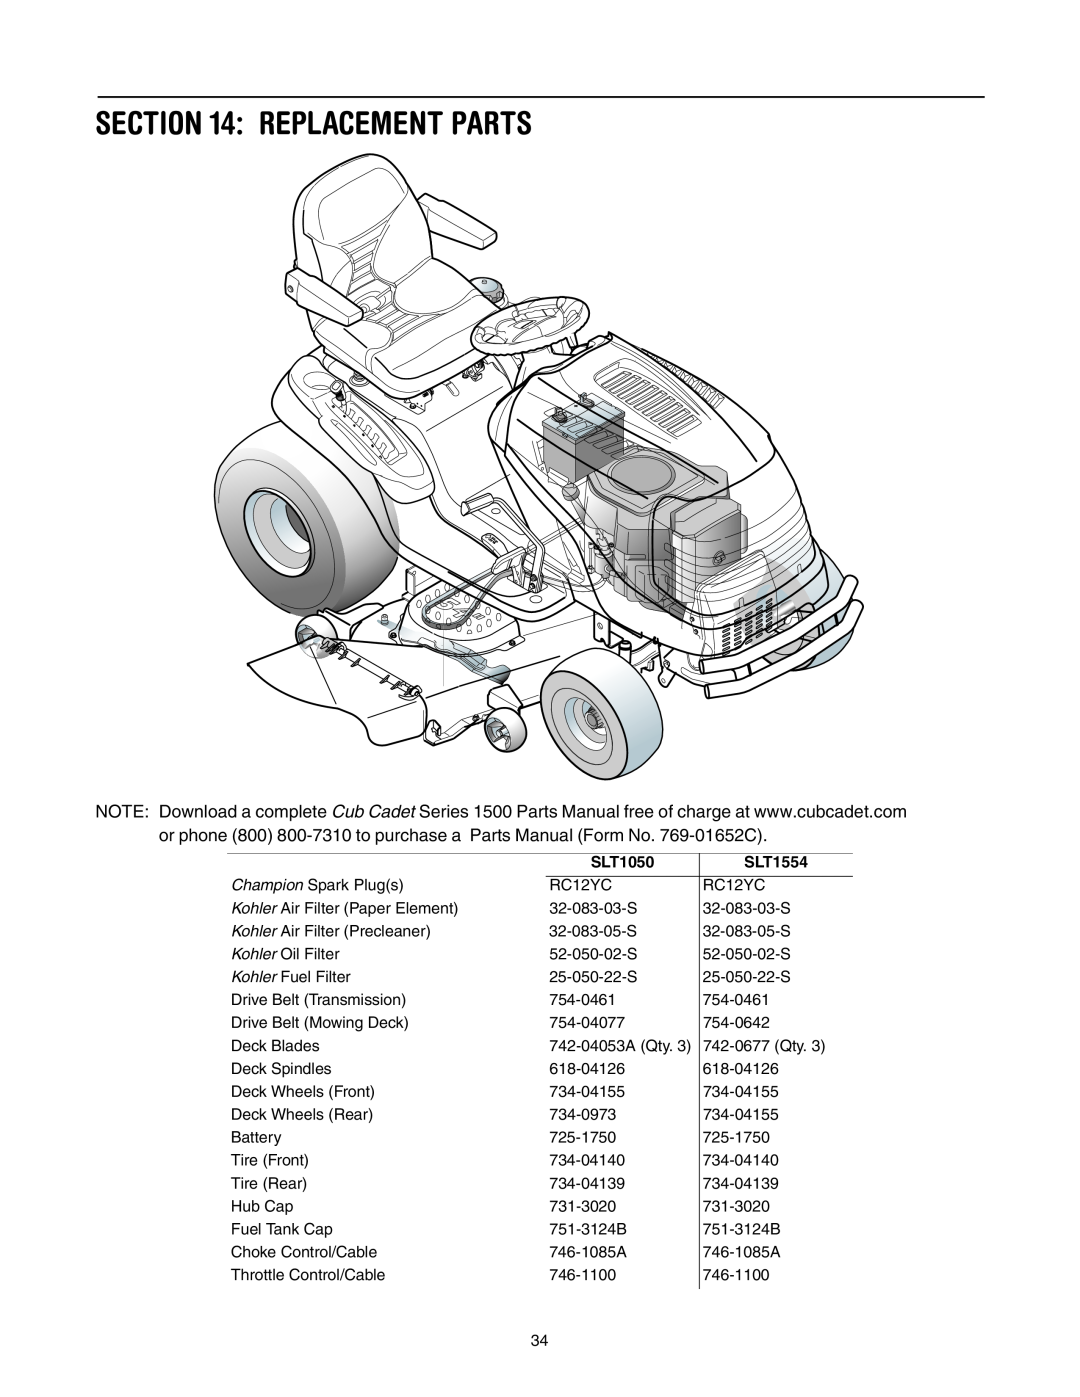 Cub Cadet SLT1554, SLT1550, SLT1550, SLT1554 manual Replacement Parts, SLT1050 